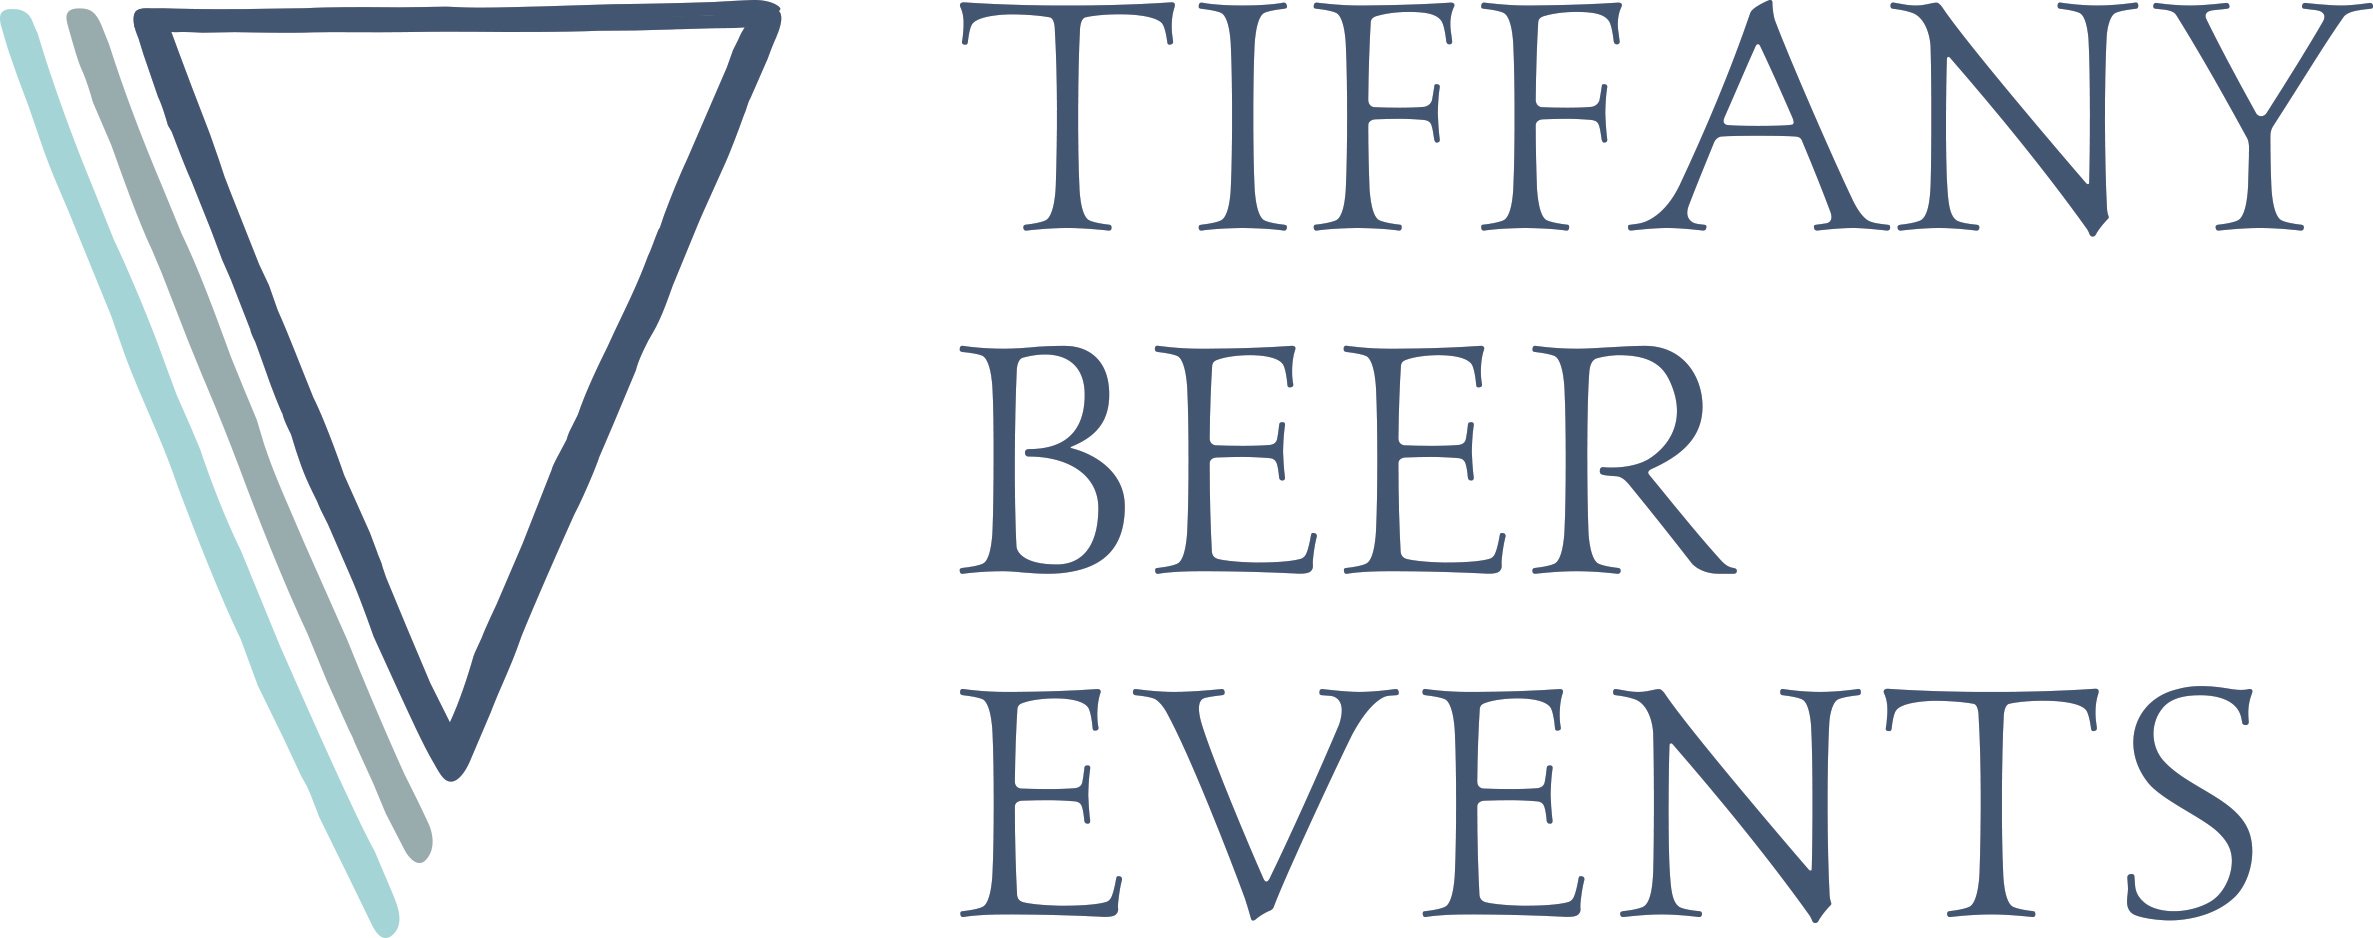 TiffanyBeerEvents_logo